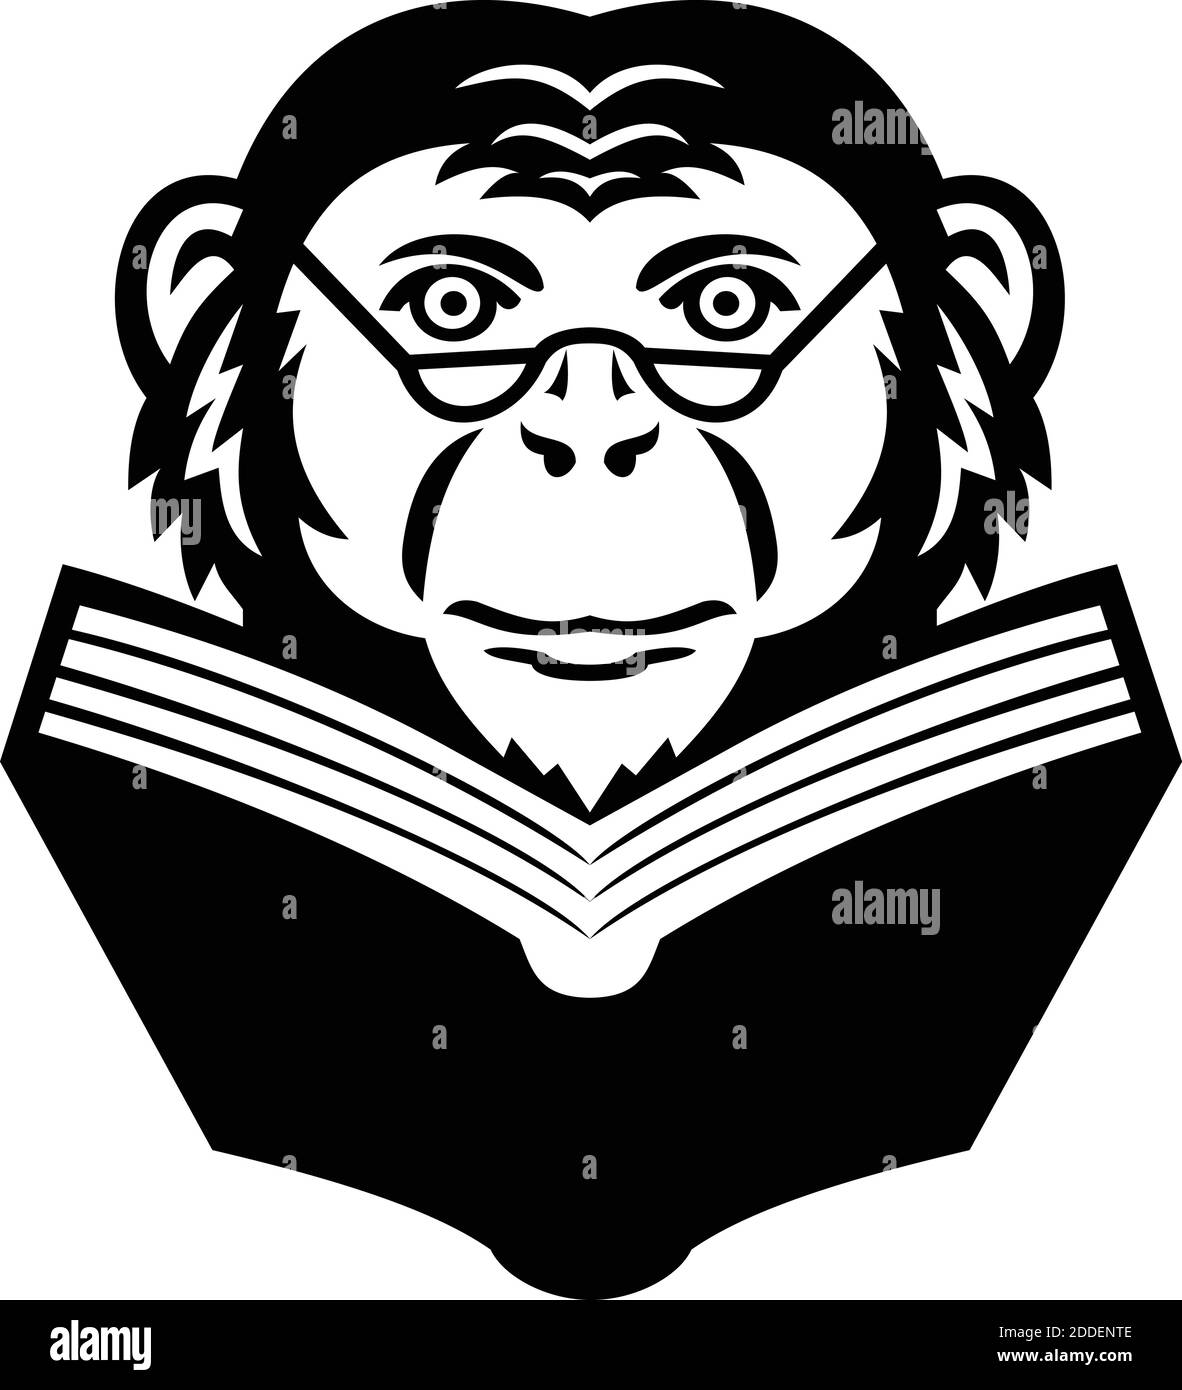 Mascota ilustración de la cabeza de un noble chimpancé, chimpa, mono, primate o mono usando gafas leyendo un libro visto desde el frente en un grupo de atrás aislado Ilustración del Vector